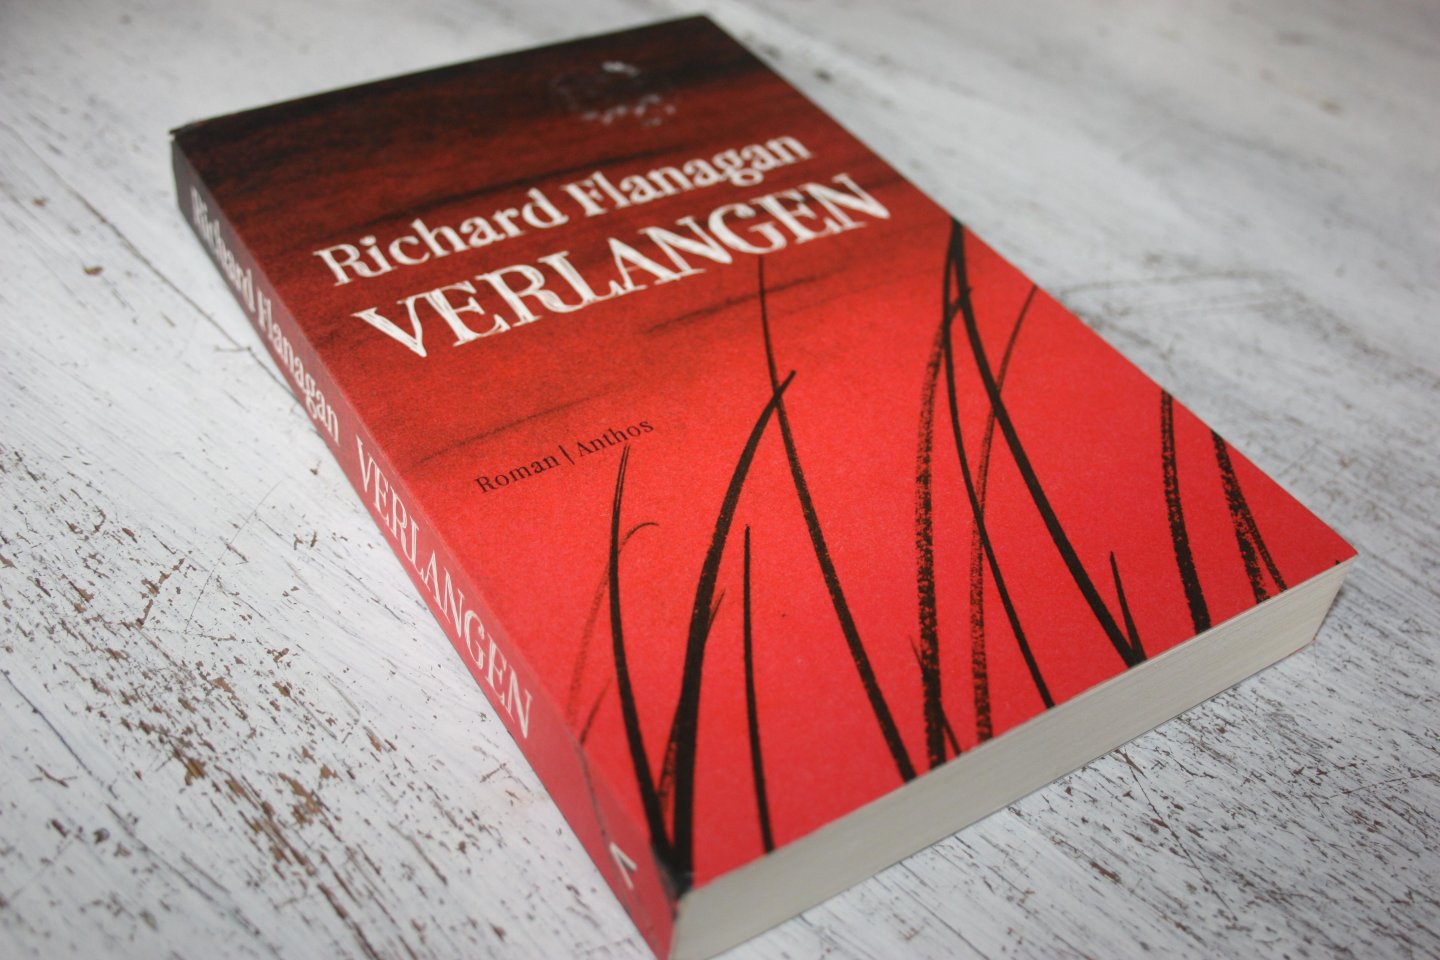 Flanagan, Richard - VERLANGEN